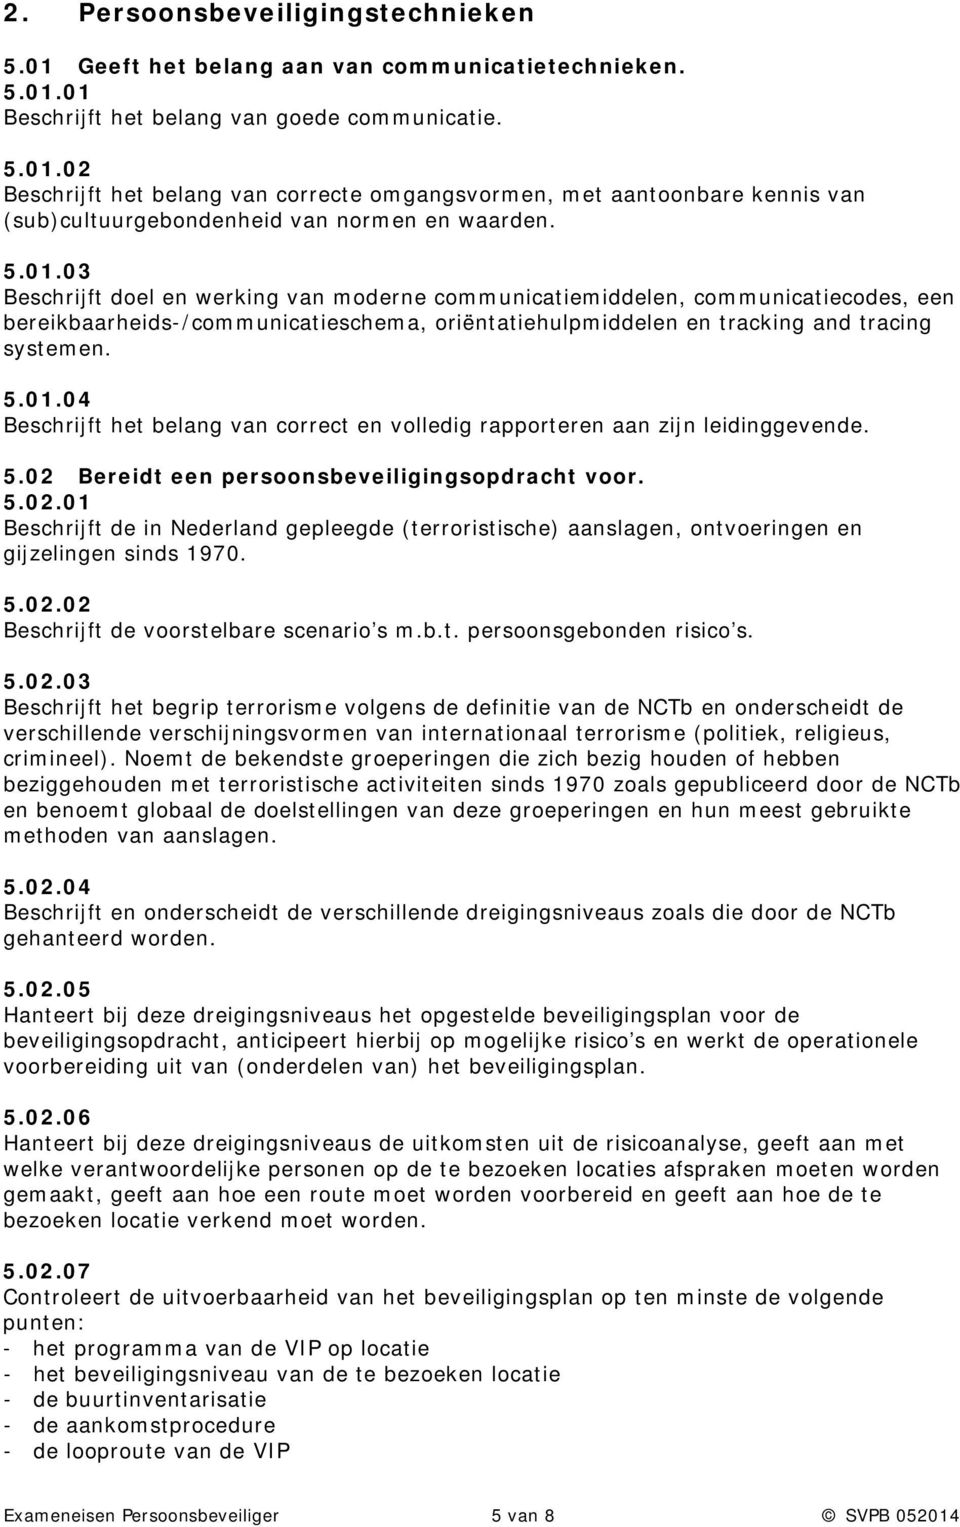 5.02 Bereidt een persoonsbeveiligingsopdracht voor. 5.02.01 Beschrijft de in Nederland gepleegde (terroristische) aanslagen, ontvoeringen en gijzelingen sinds 1970. 5.02.02 Beschrijft de voorstelbare scenario s m.